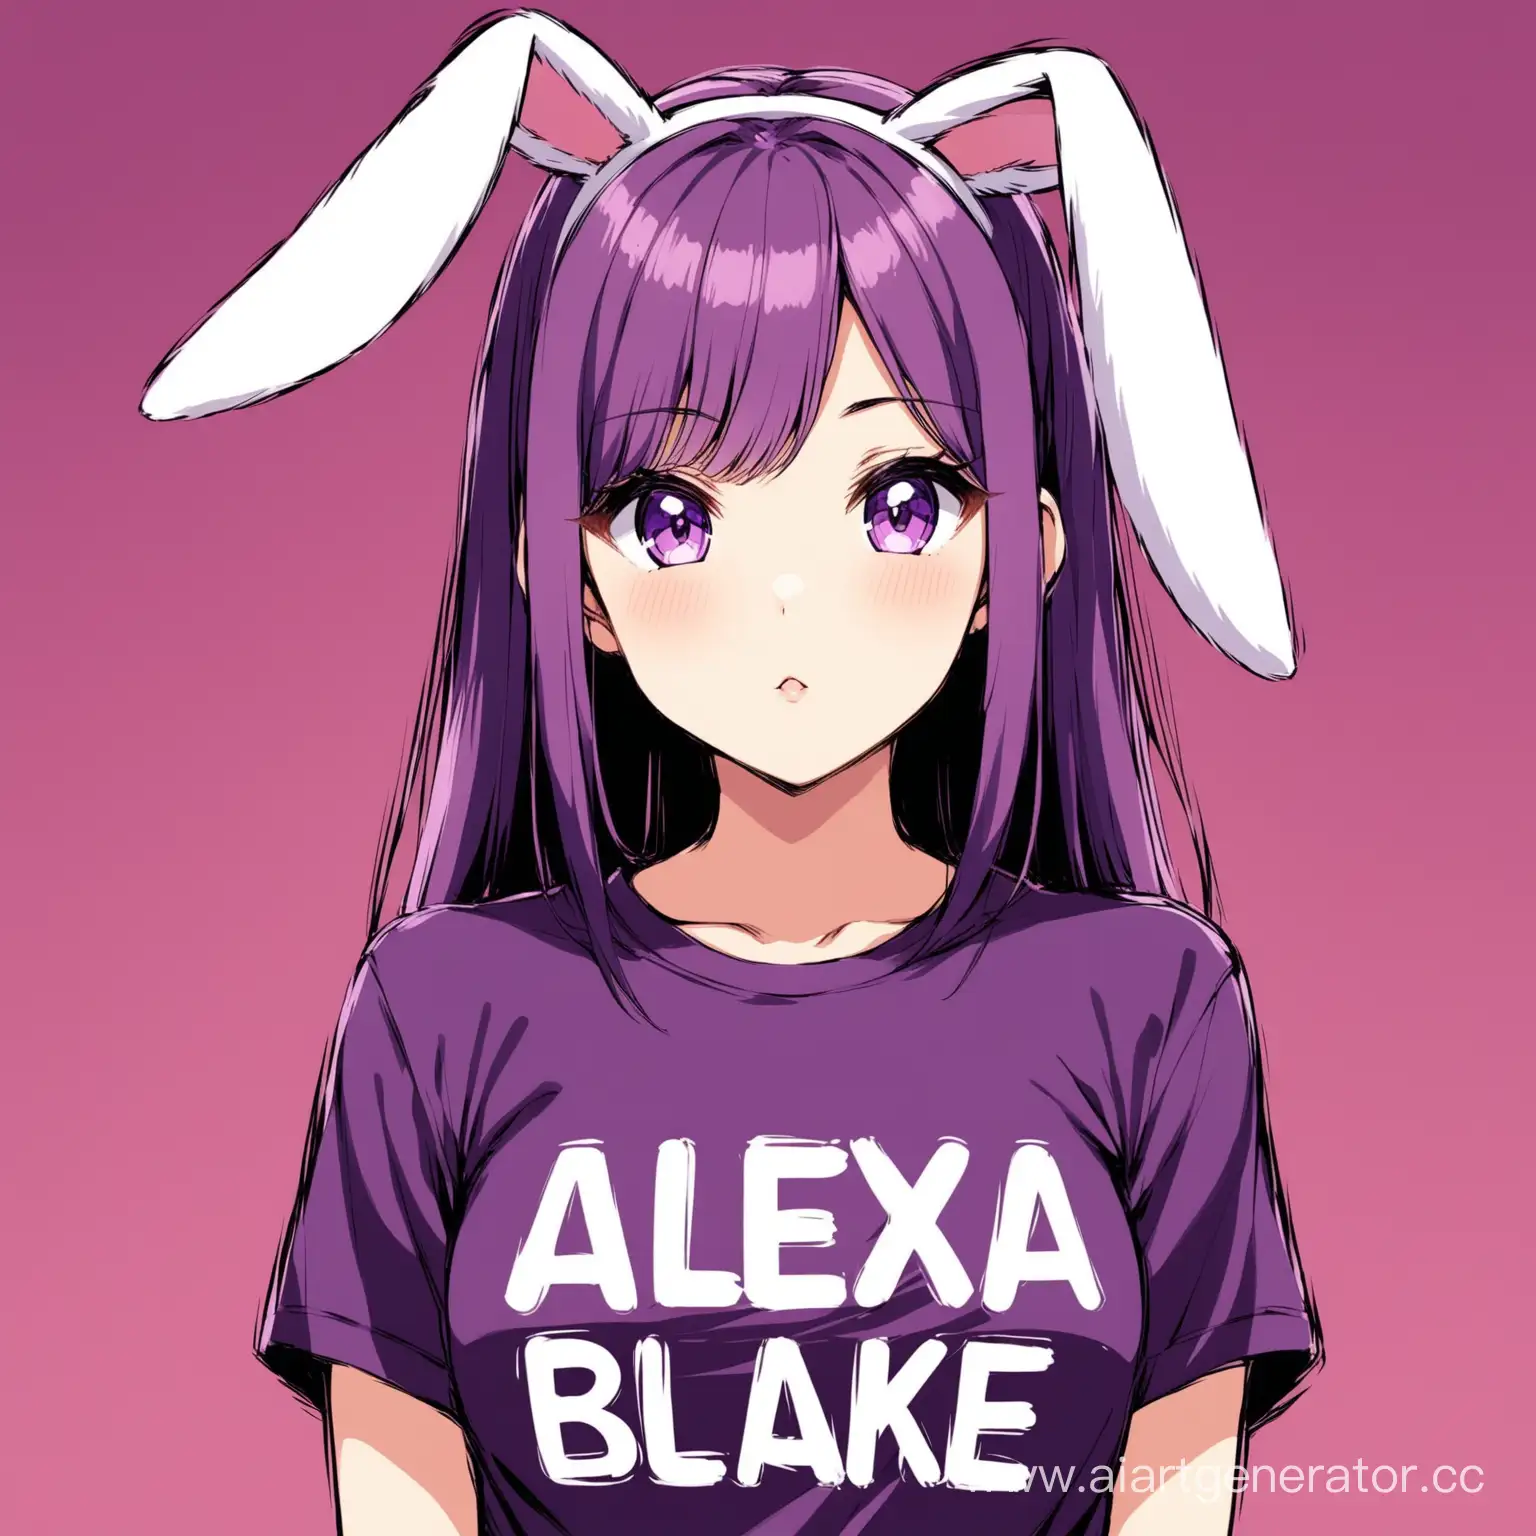 Аниме девушка с ушками кролика, фиолетовые волосы на футболке написано Alexa blake 